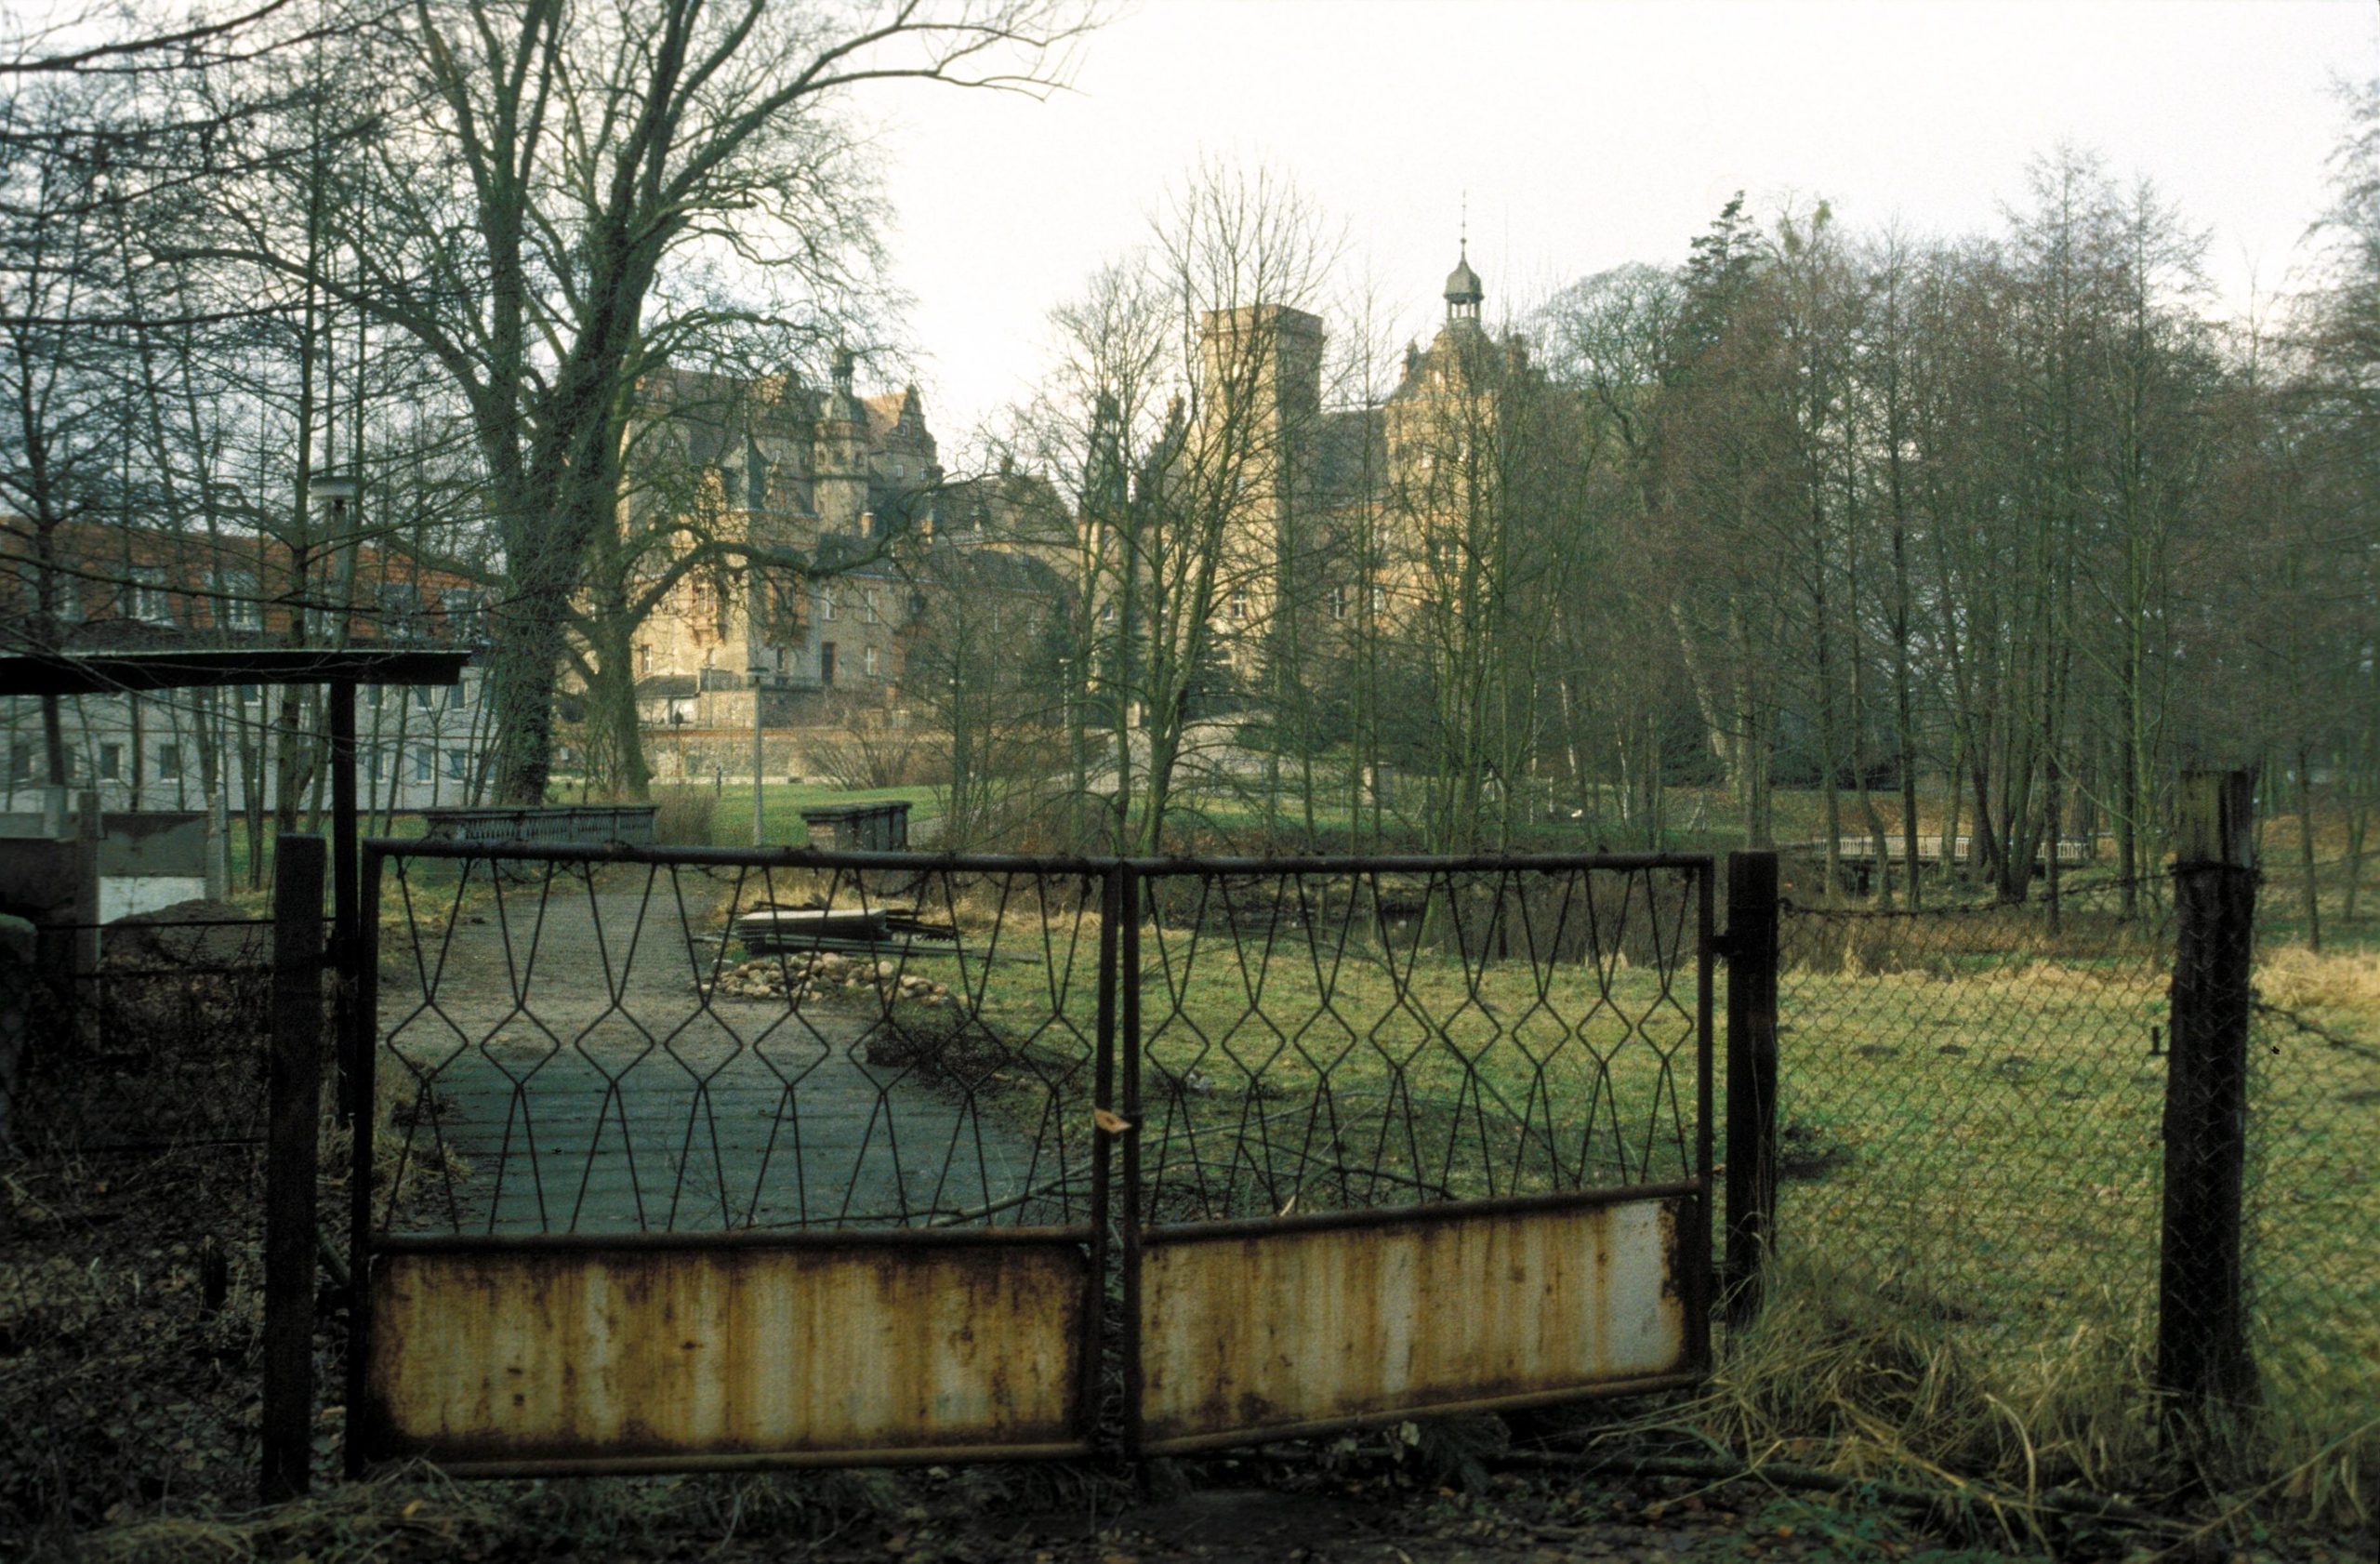 Verrostetes Einfahrtstor zum Schlosspark, 1991. Foto: Imago/Werner Schulze